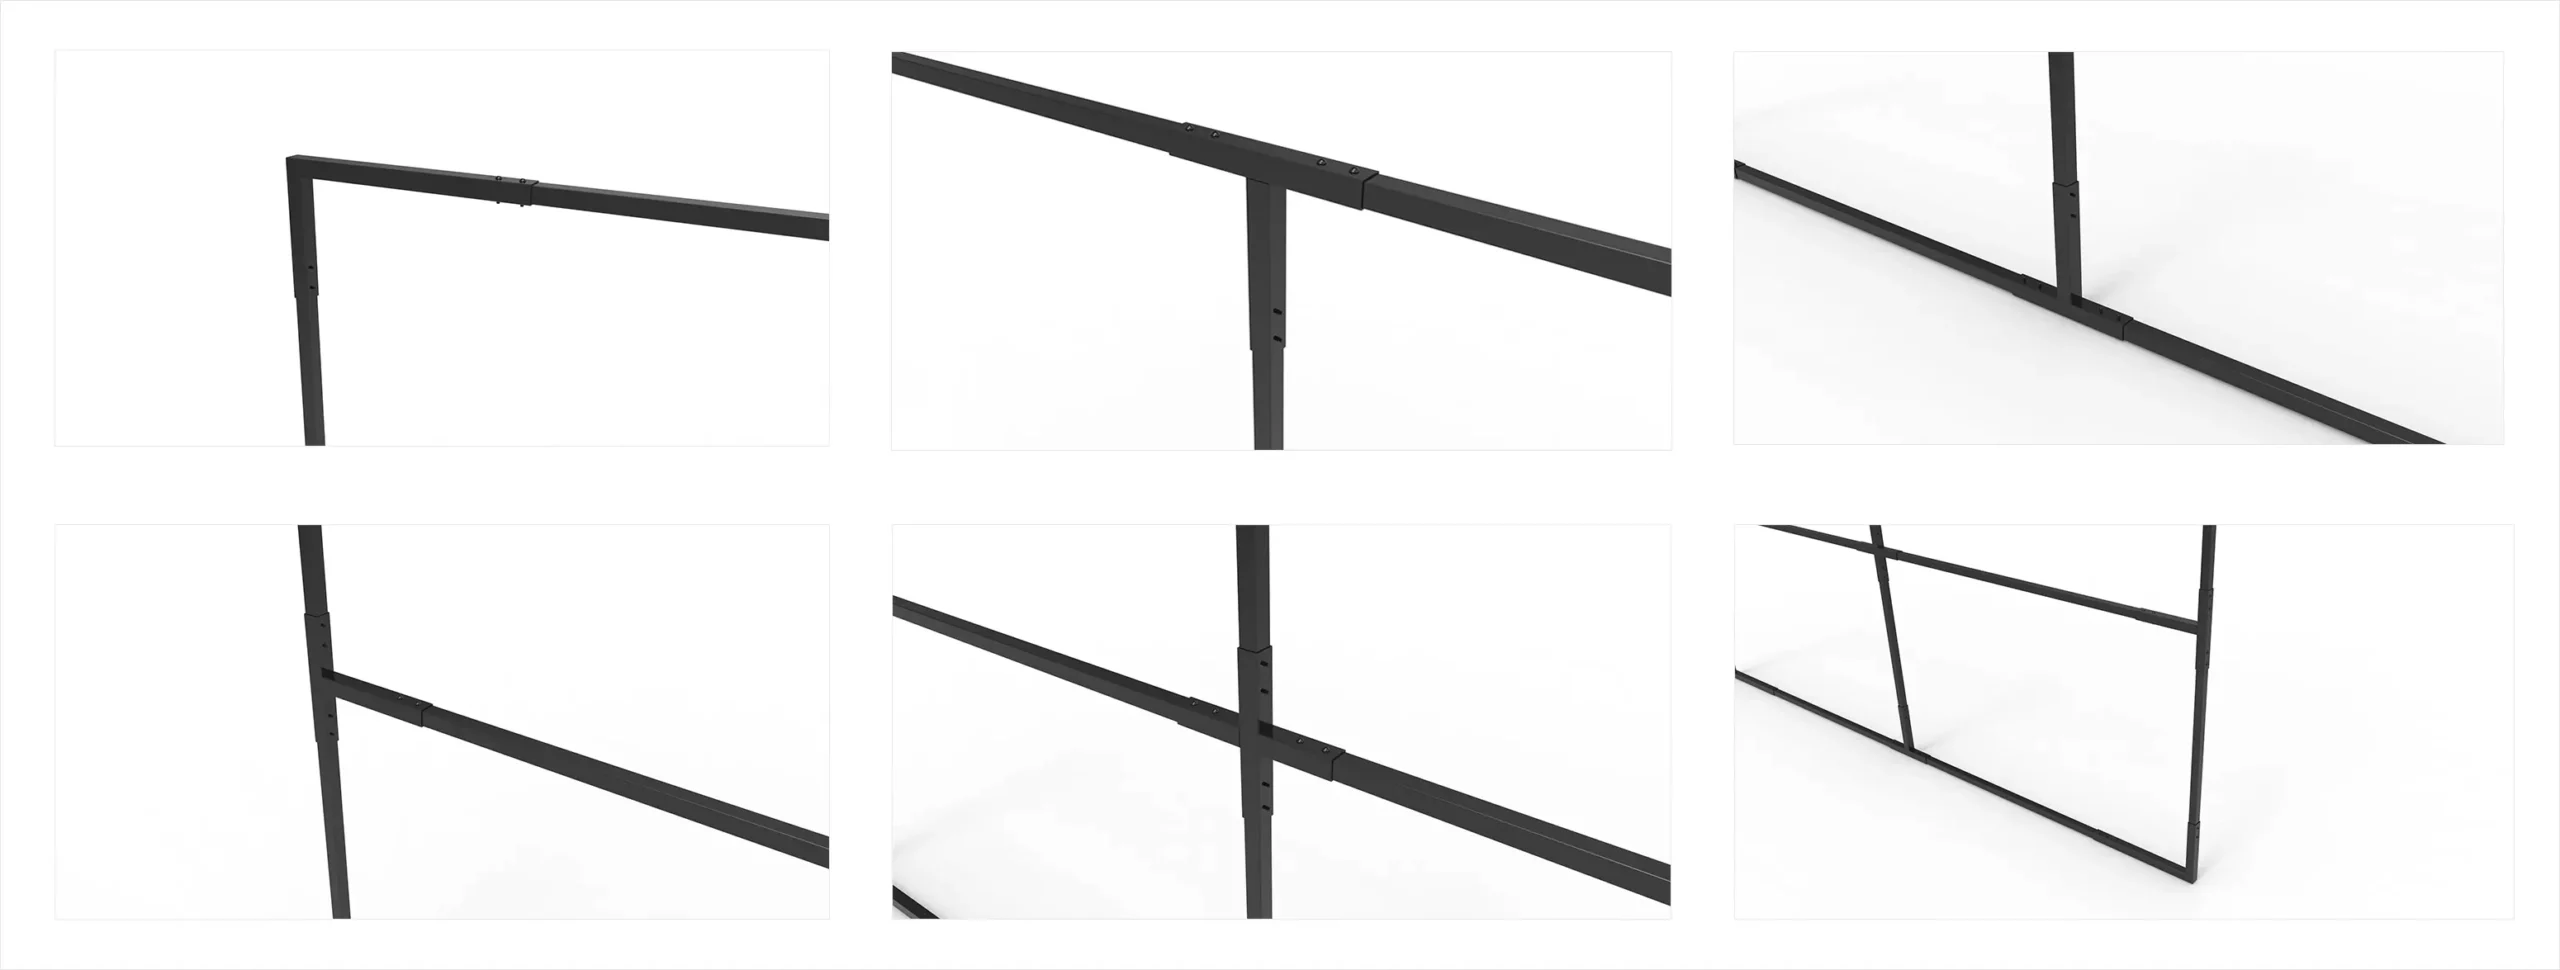 Adjustable Fence Panels Frame Details